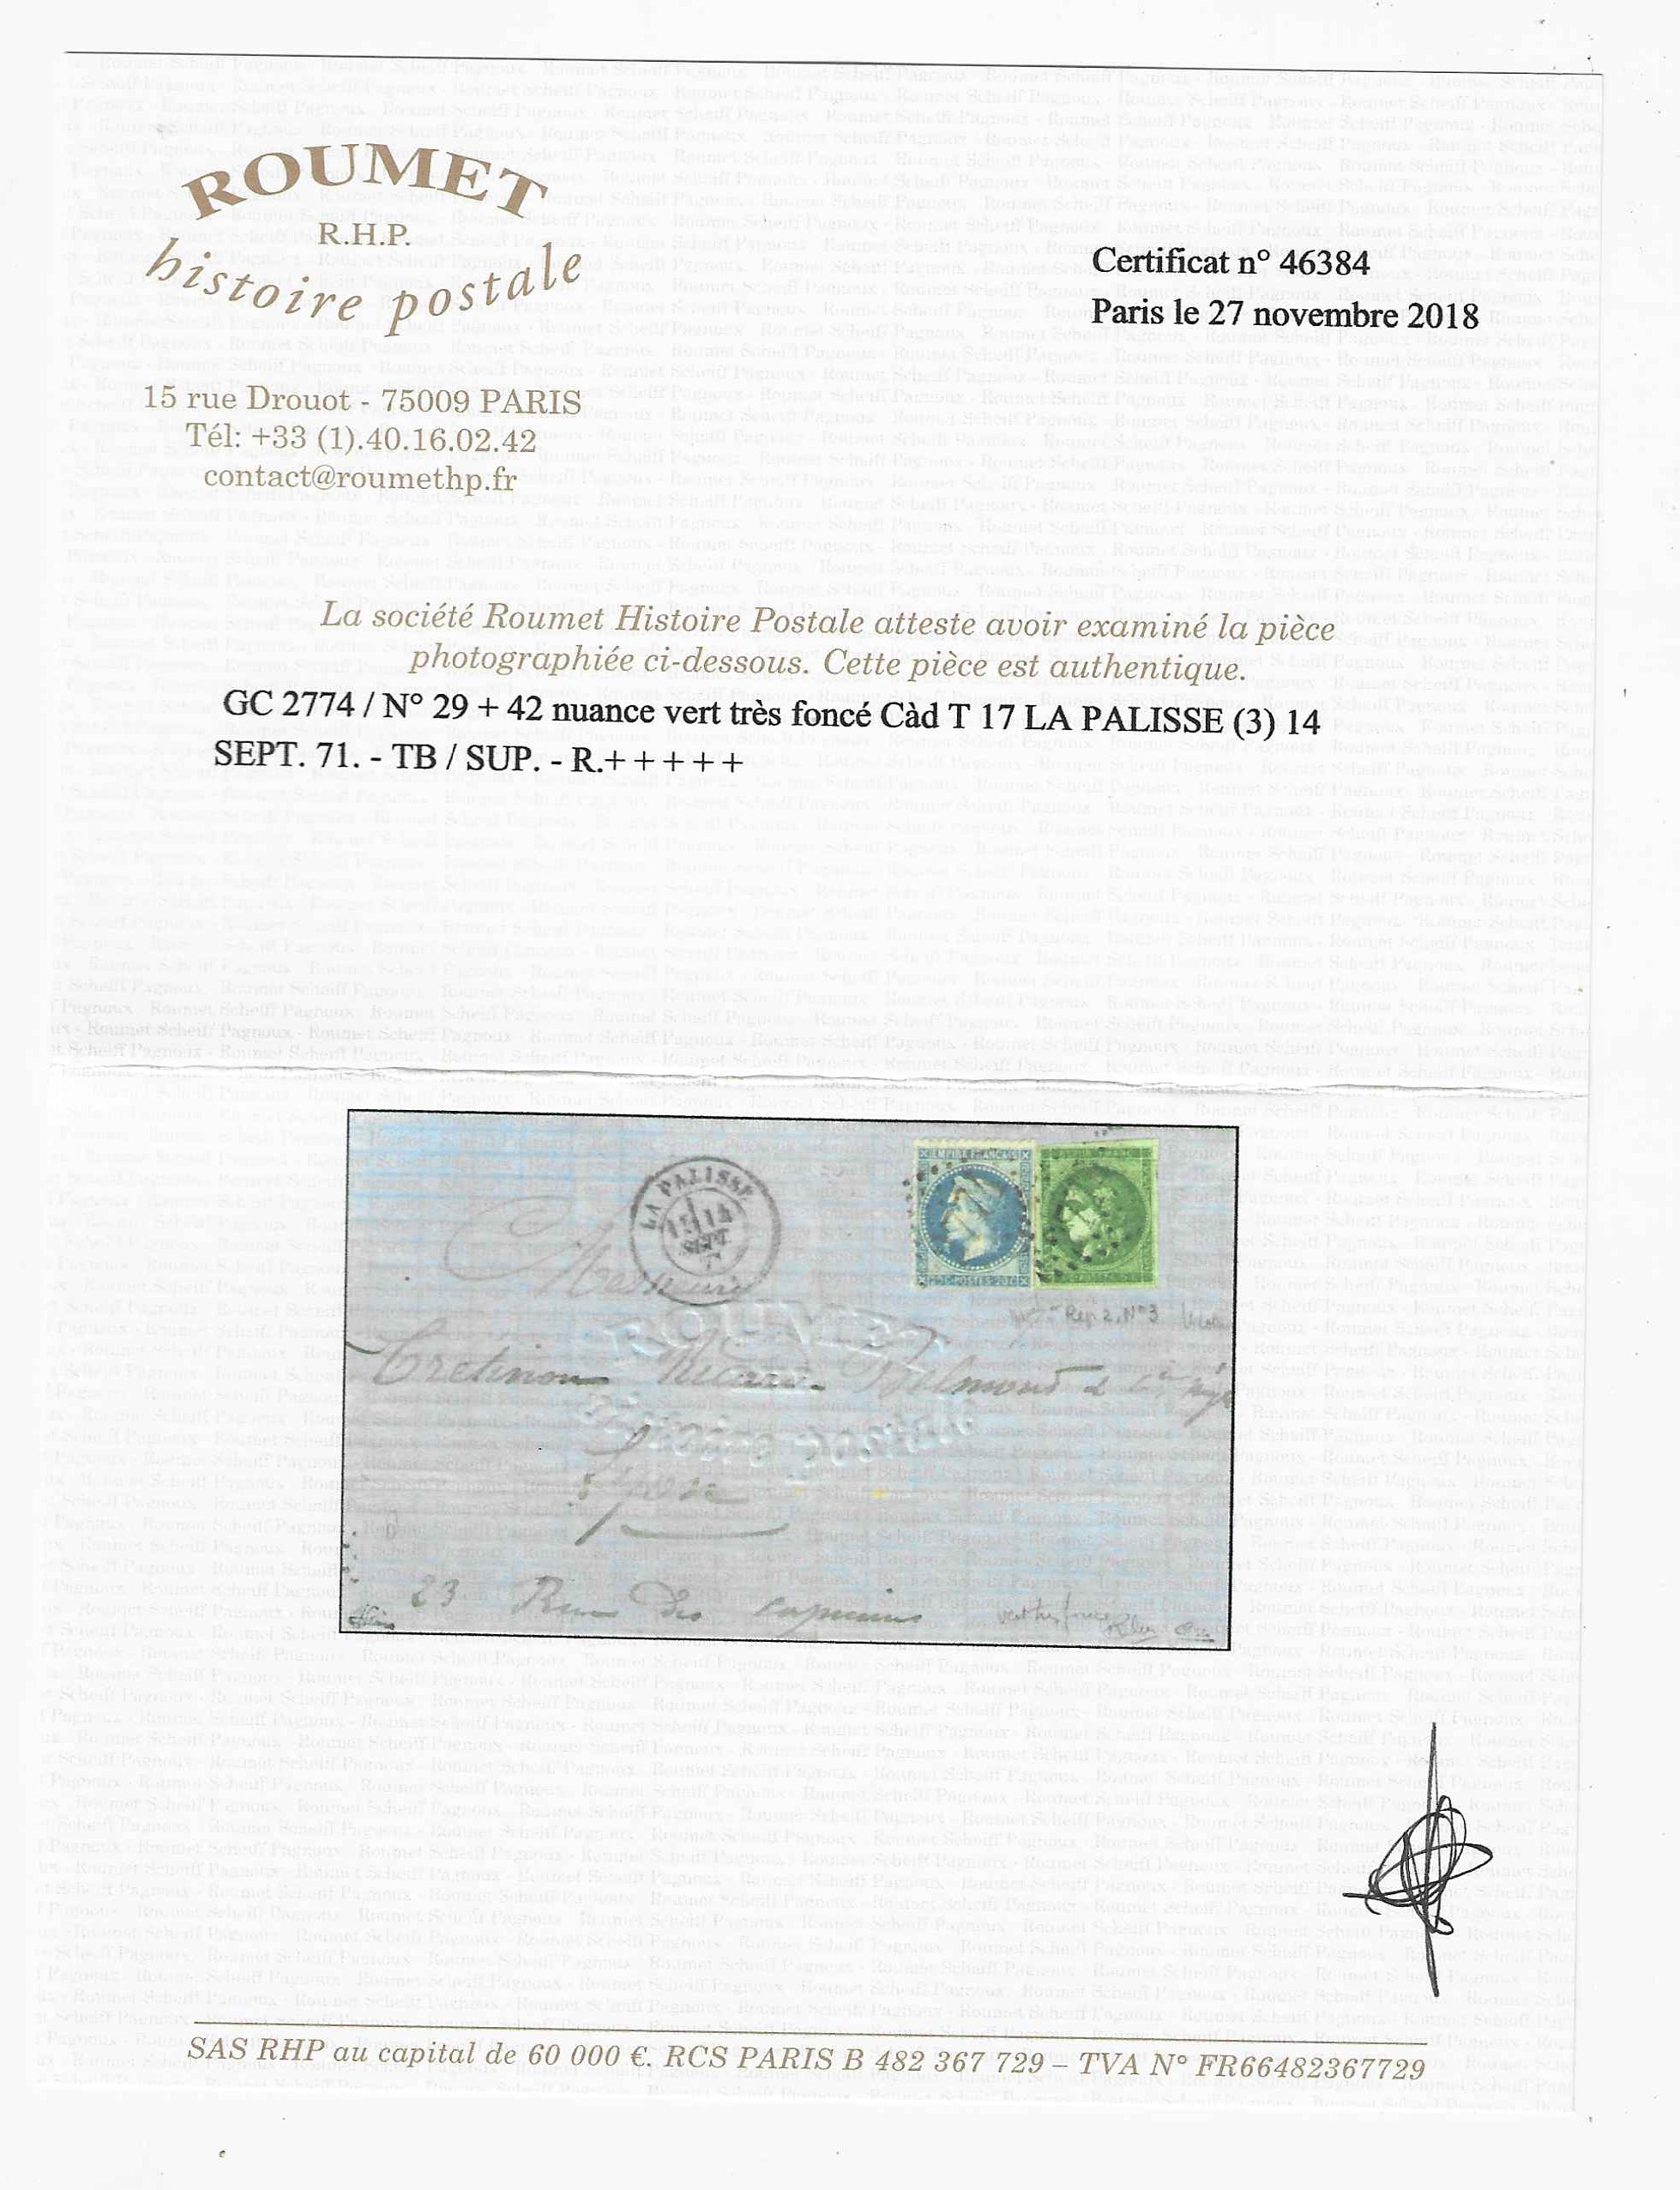 N°42Be - Emission de Bordeaux - 5 c. vert très foncé report 2 - sur lettre - SUP - signée Calves, Brun et Jamet et avec certificats papier Calves et Roumet HP